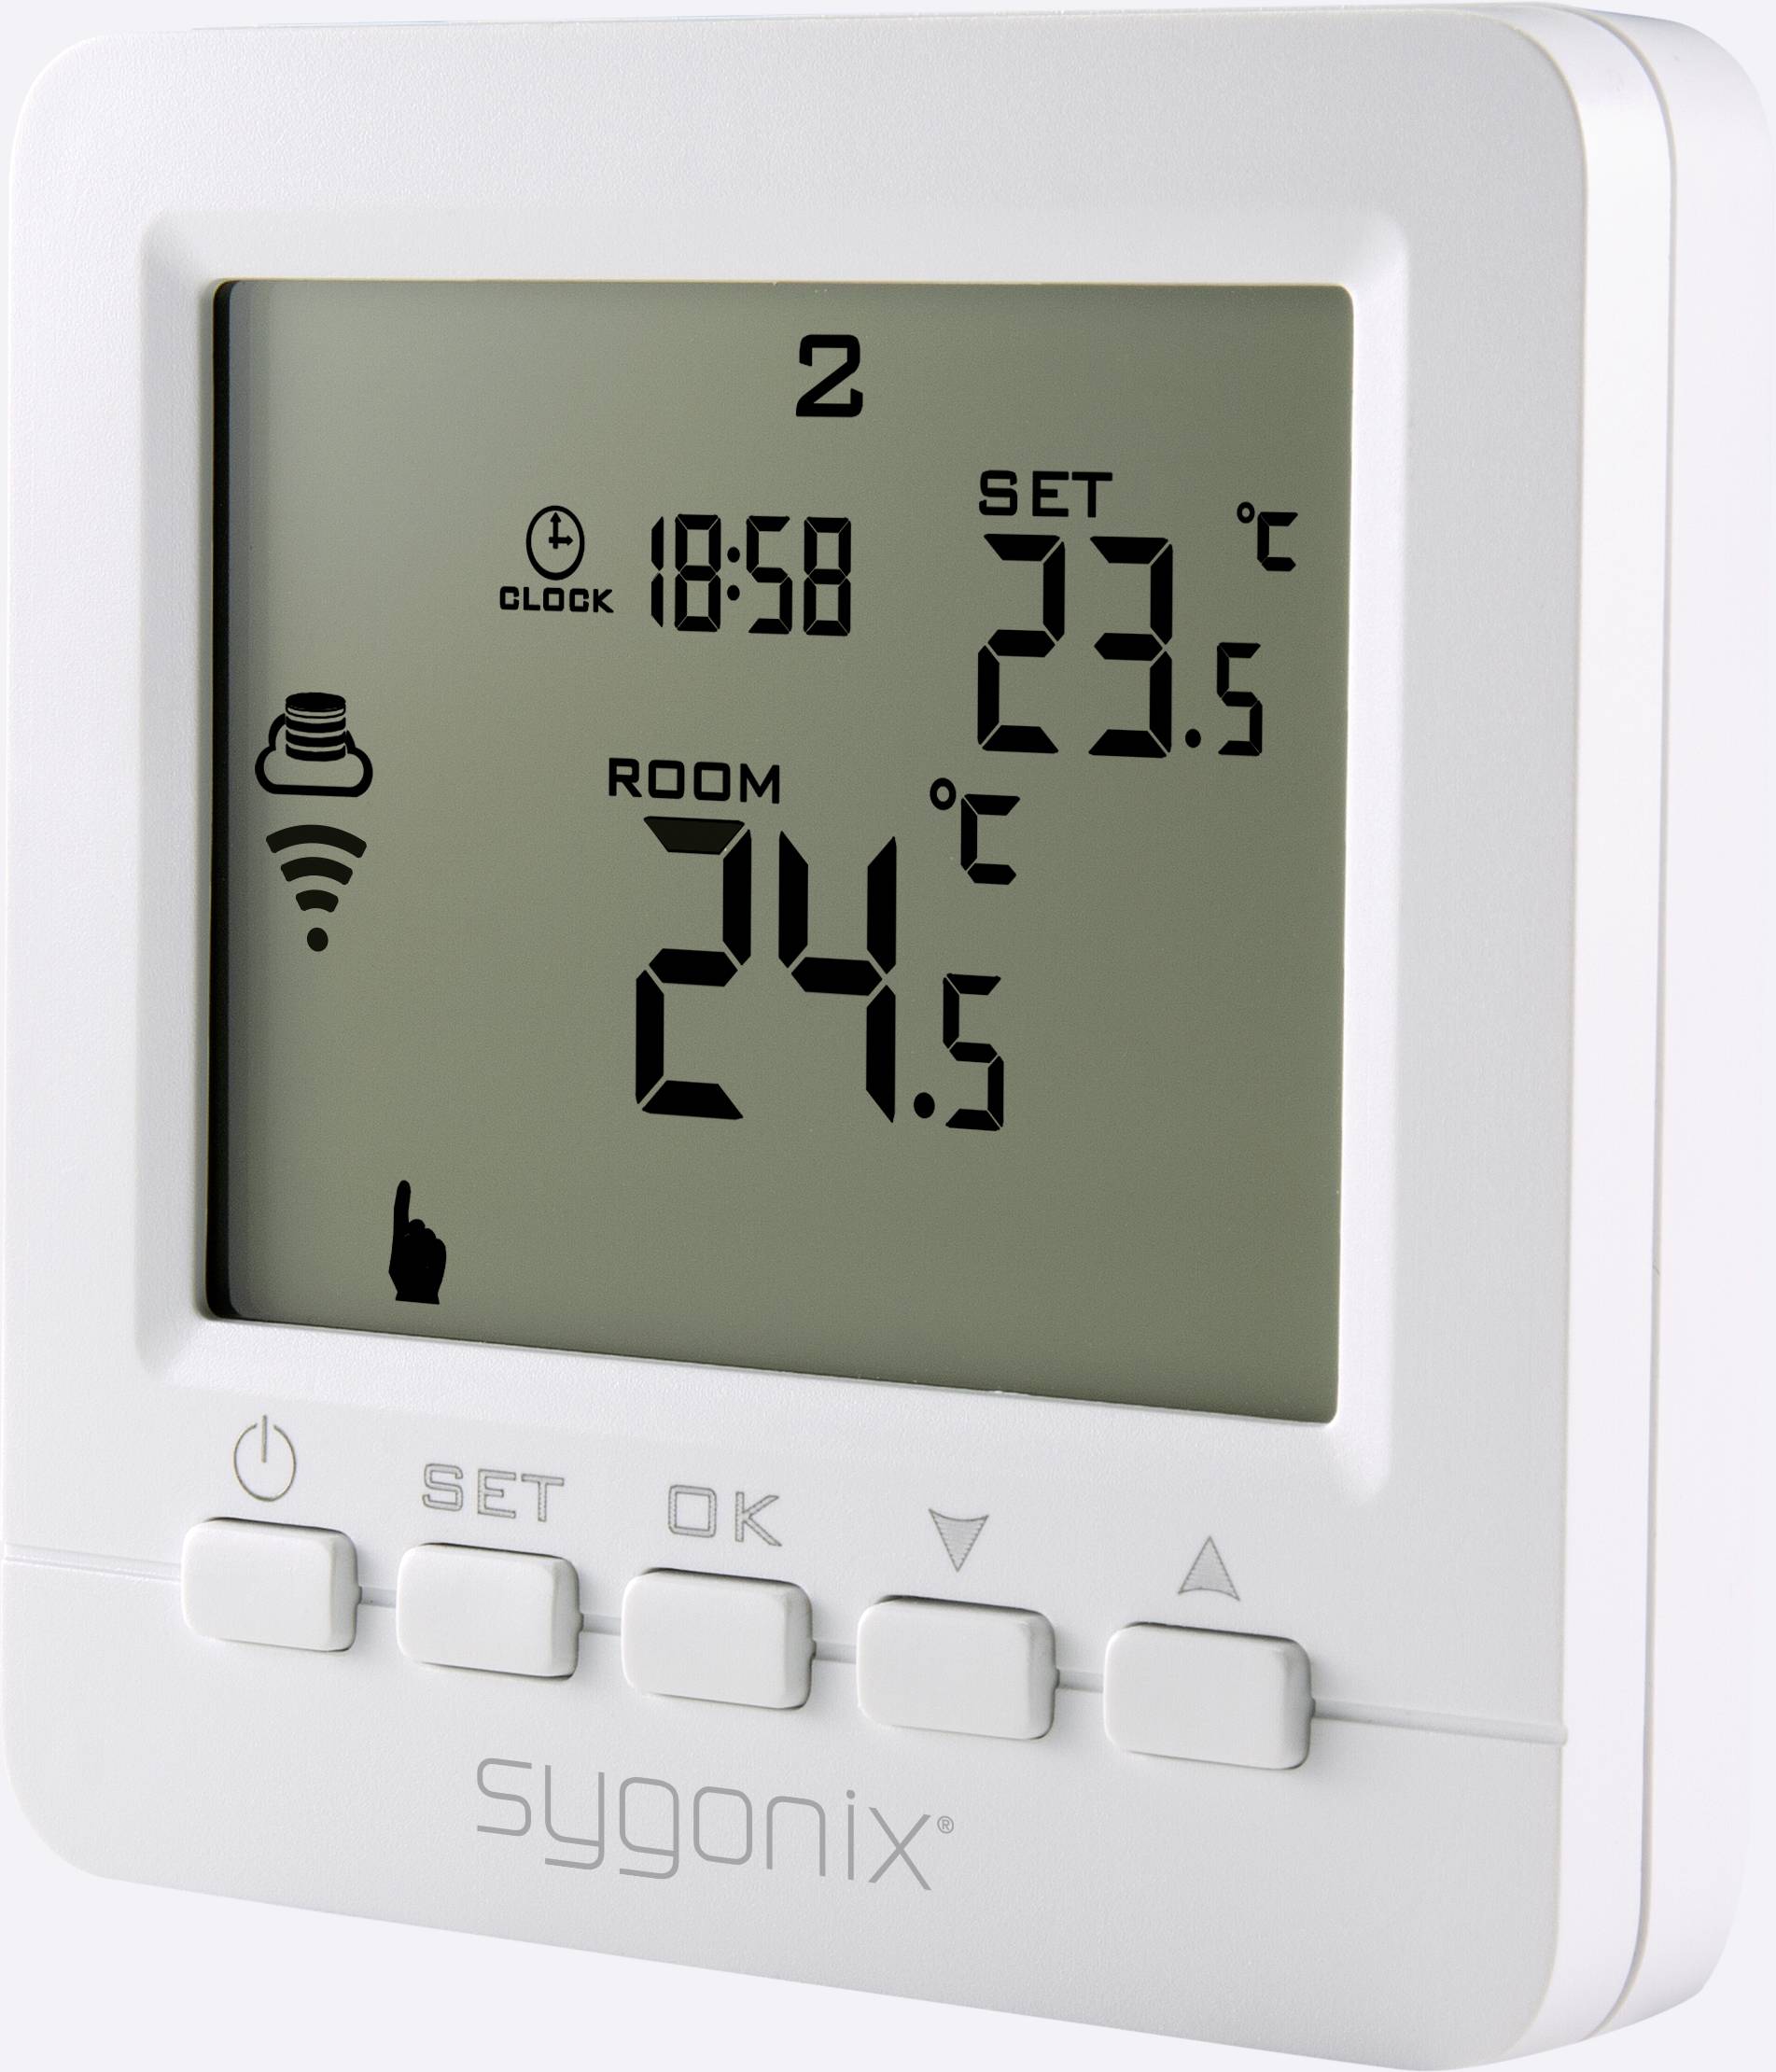 Sygonix outdoor WLAN Steckdose + thermostat für Heizung in Baden